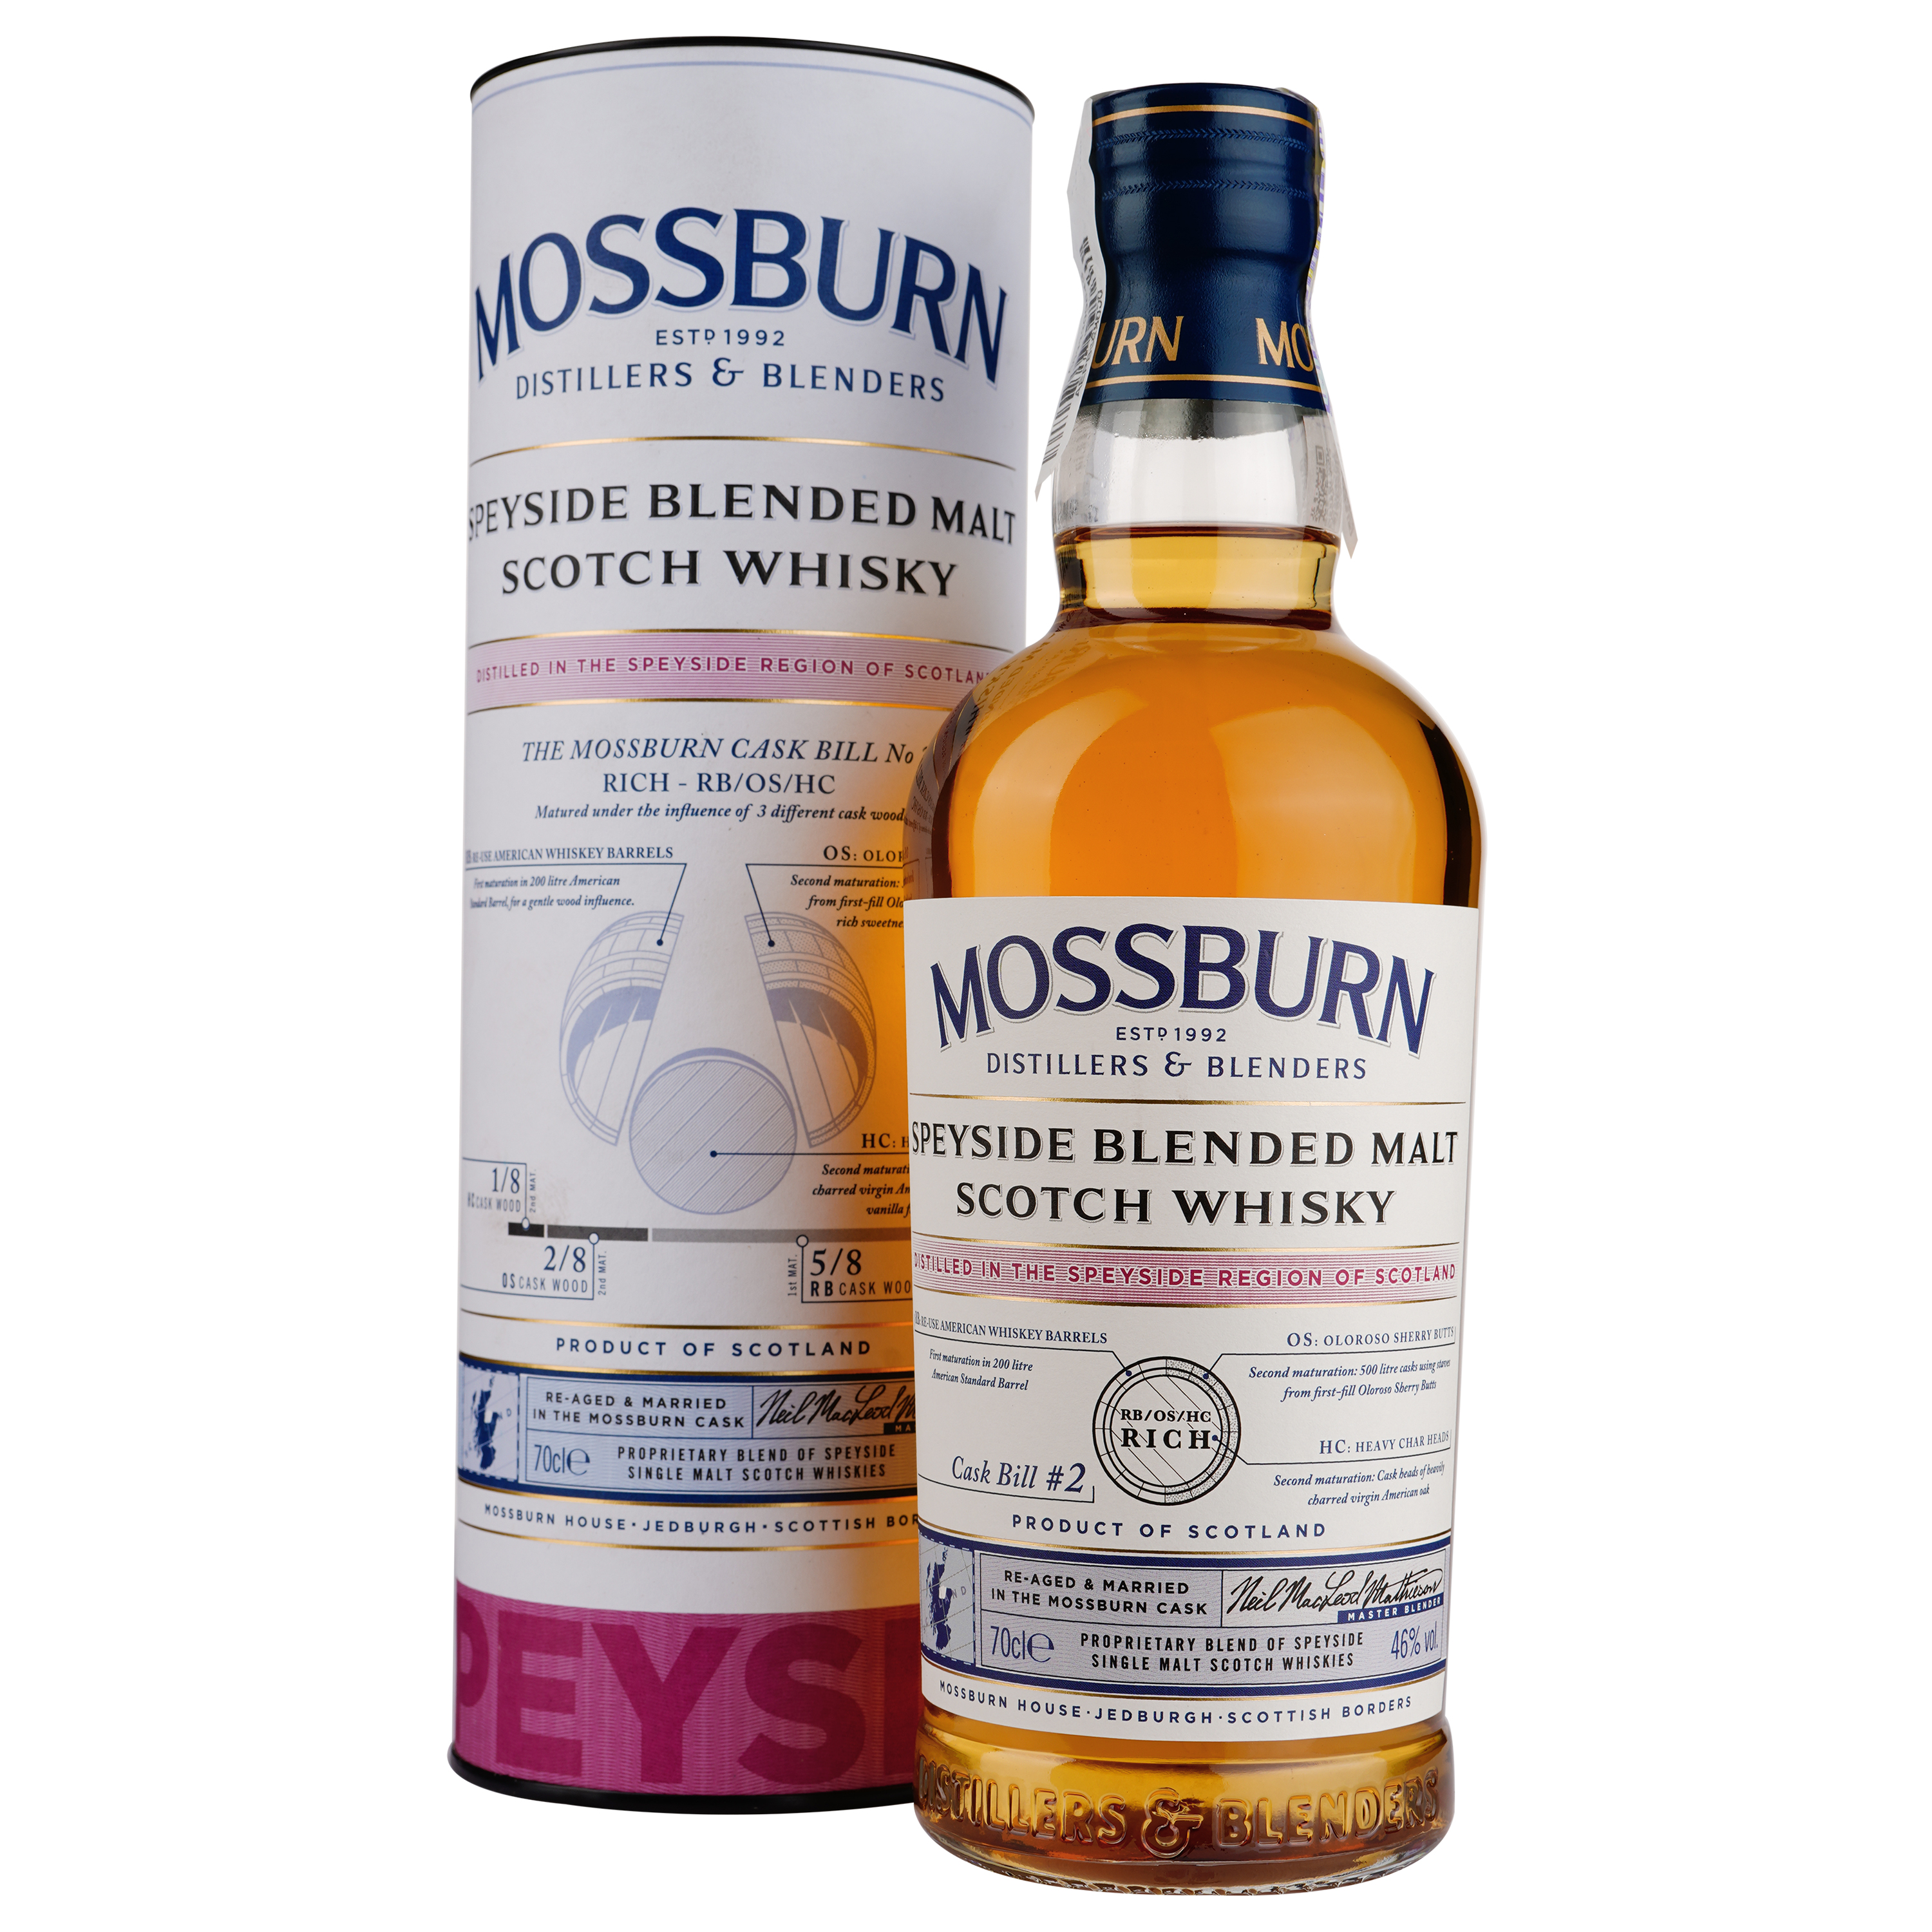 Виски Mossburn Speyside Blended Malt Scotch Whisky, 46 %, 0,7 л - фото 1